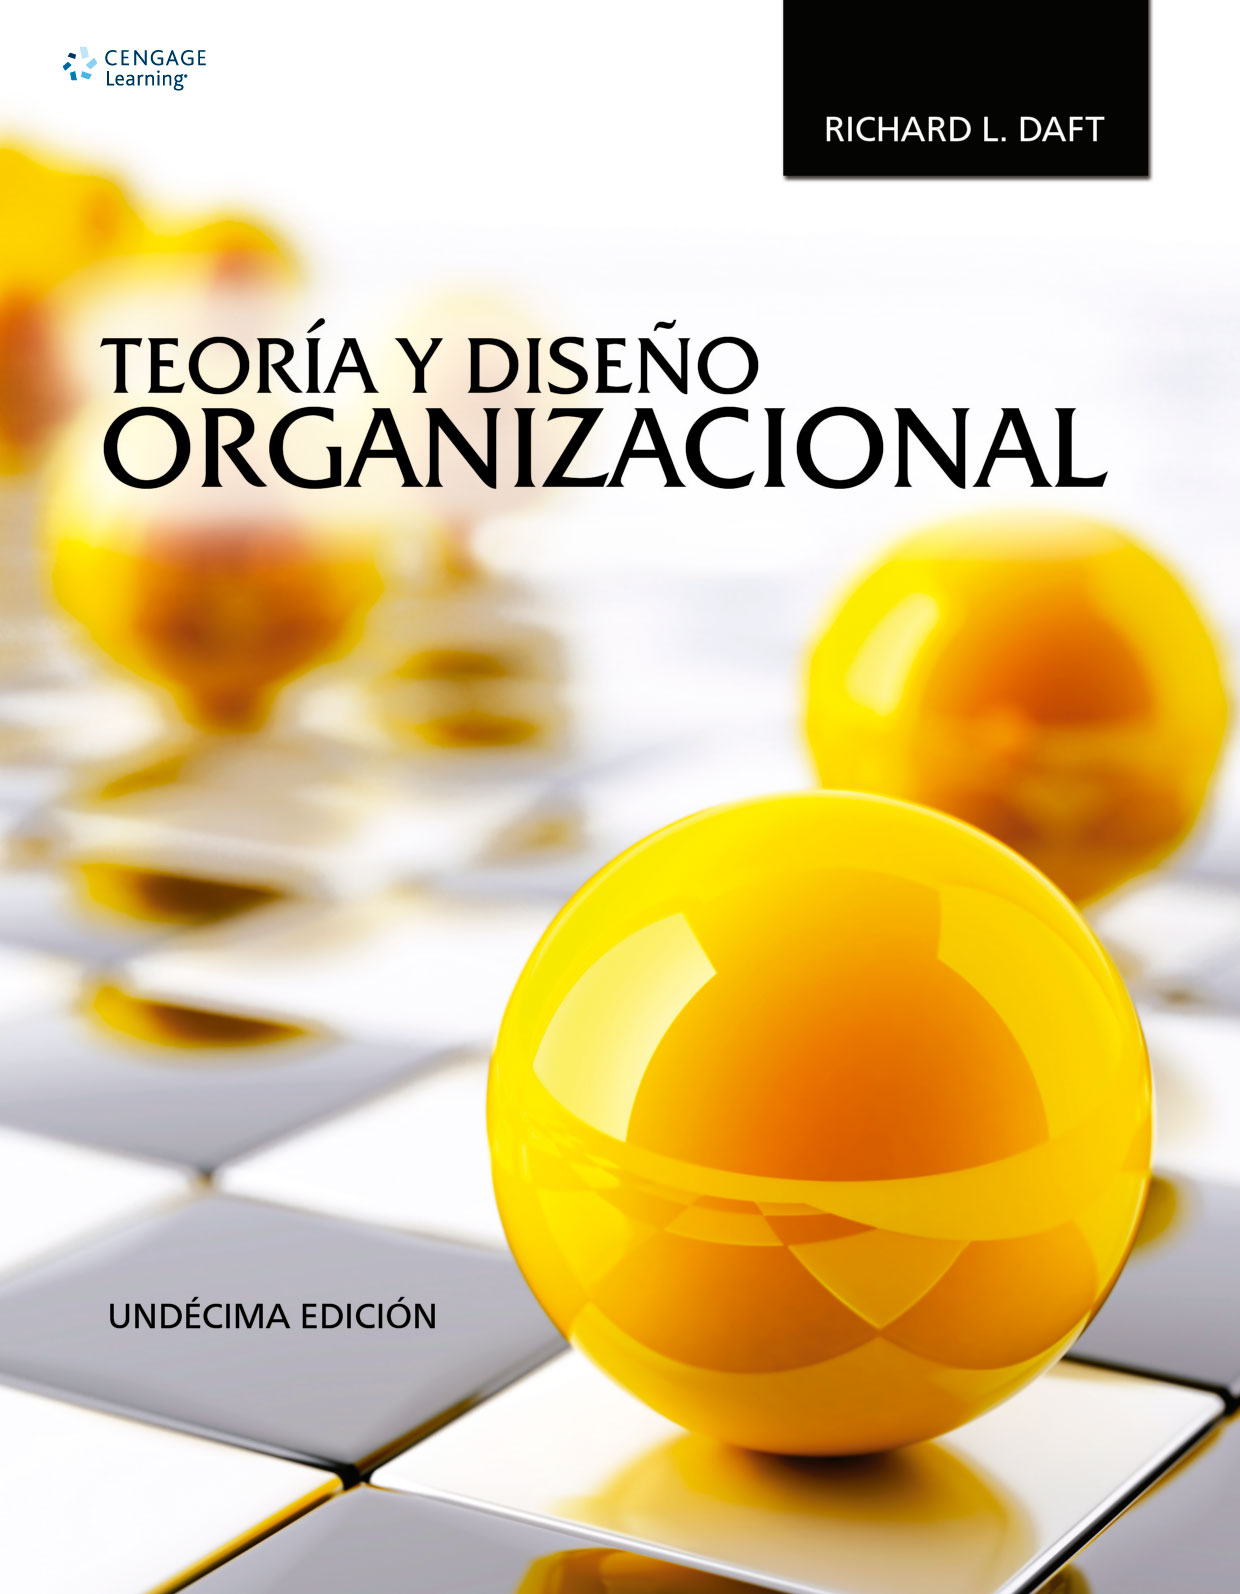 Teoría y Diseño Organizacional